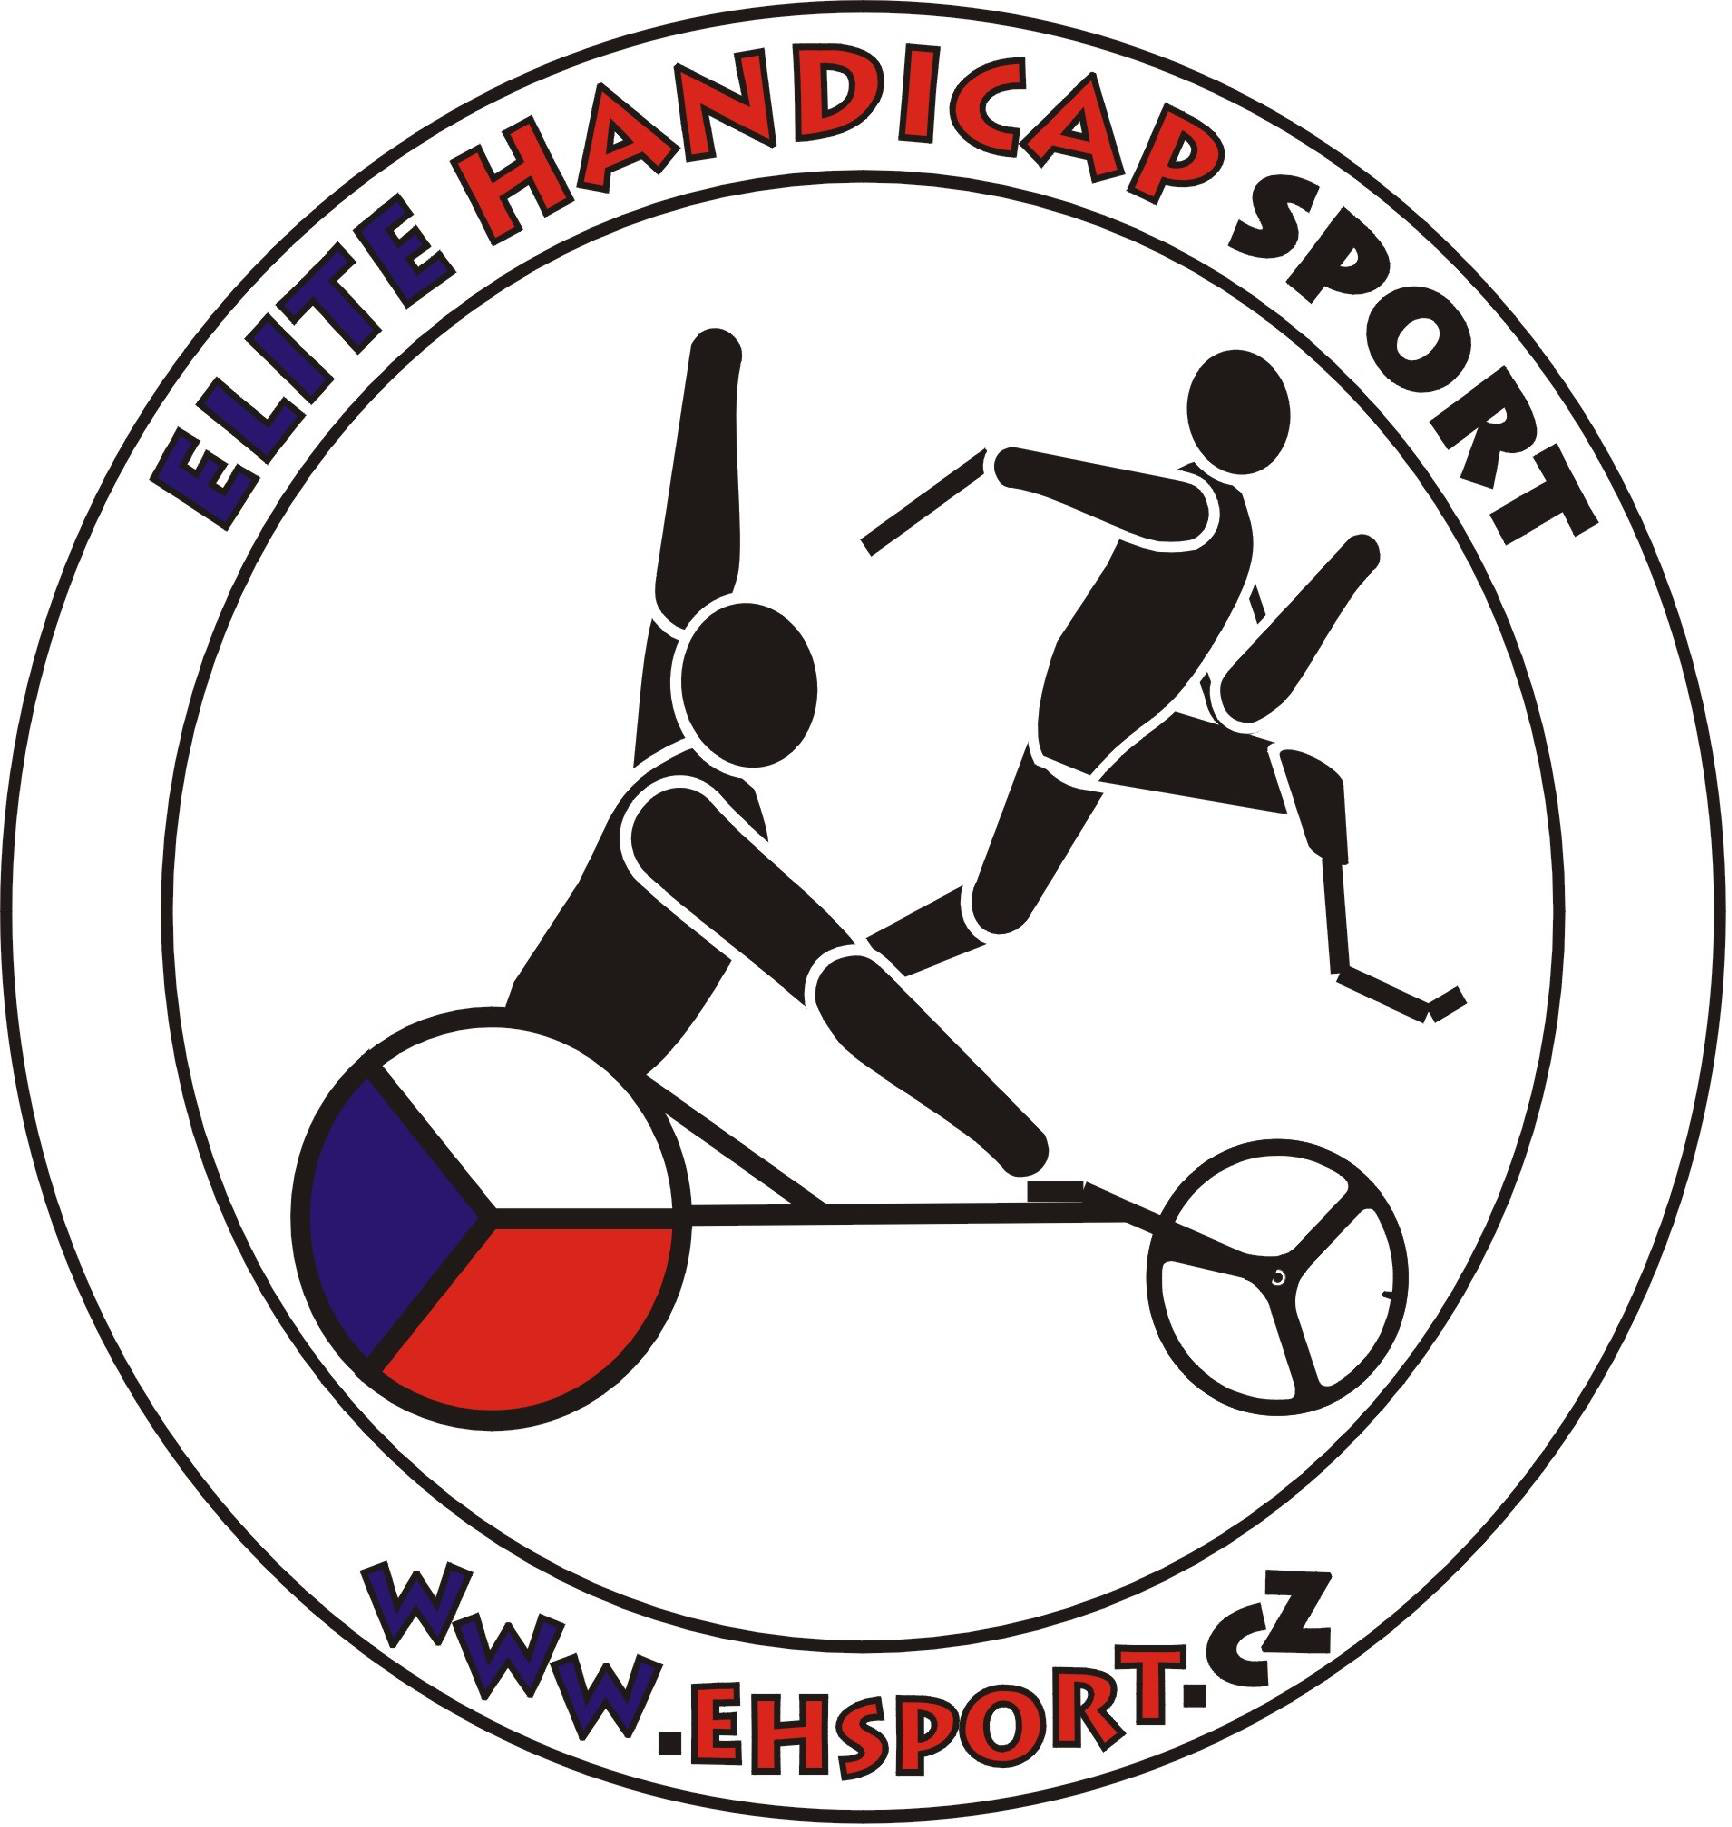 Elite Handicap Sport